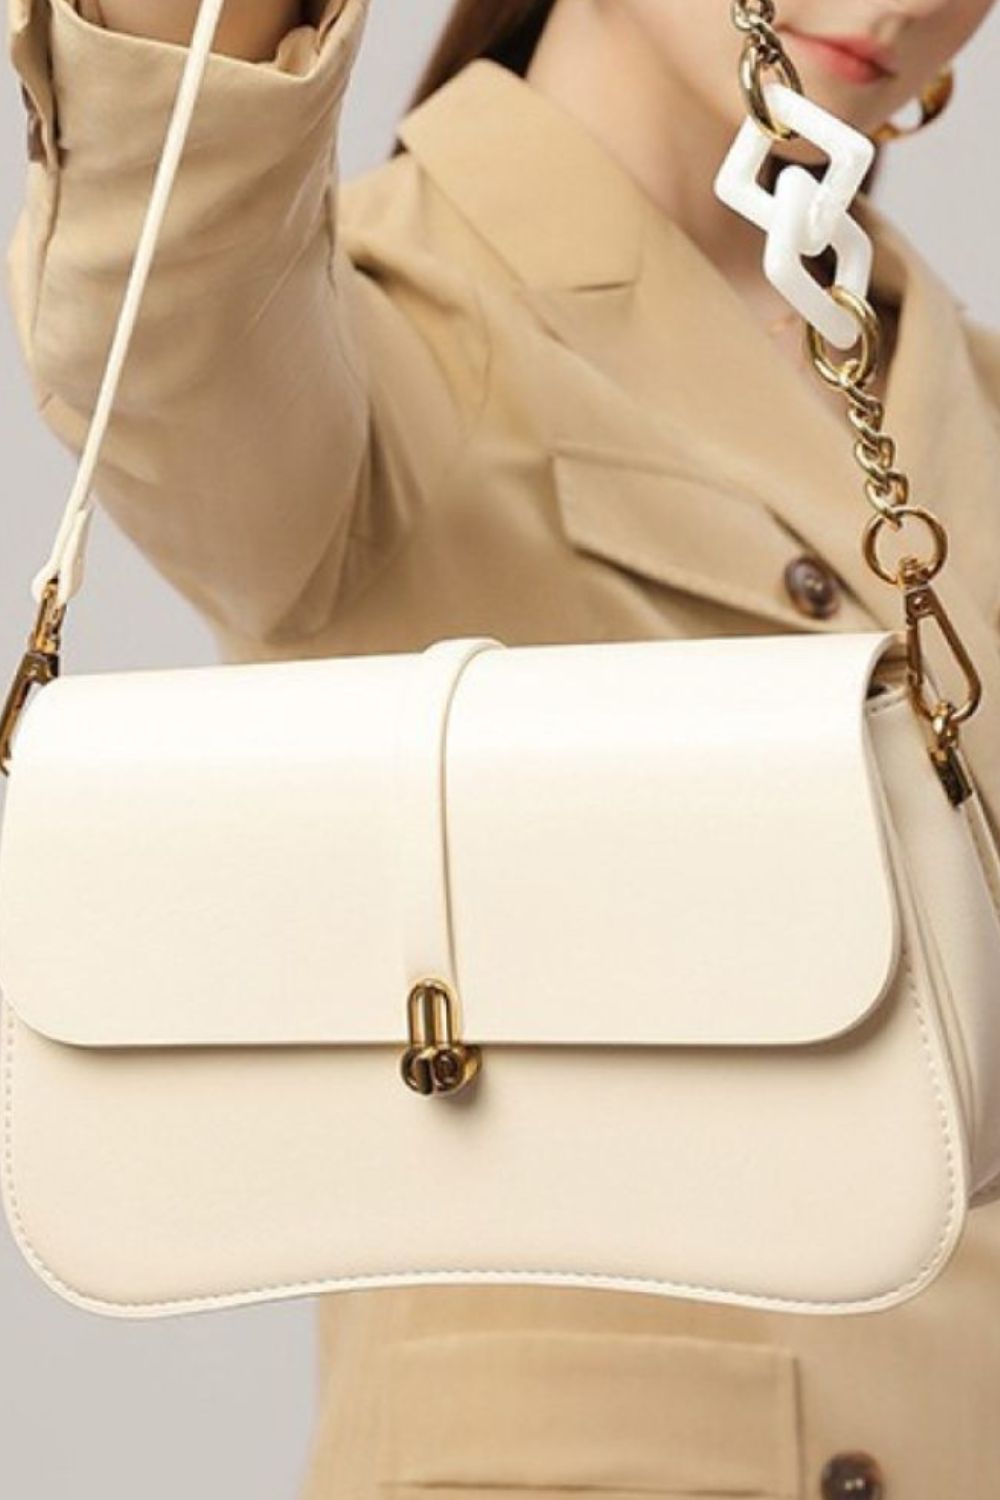 Sassy Jane PU Leather Shoulder Bag